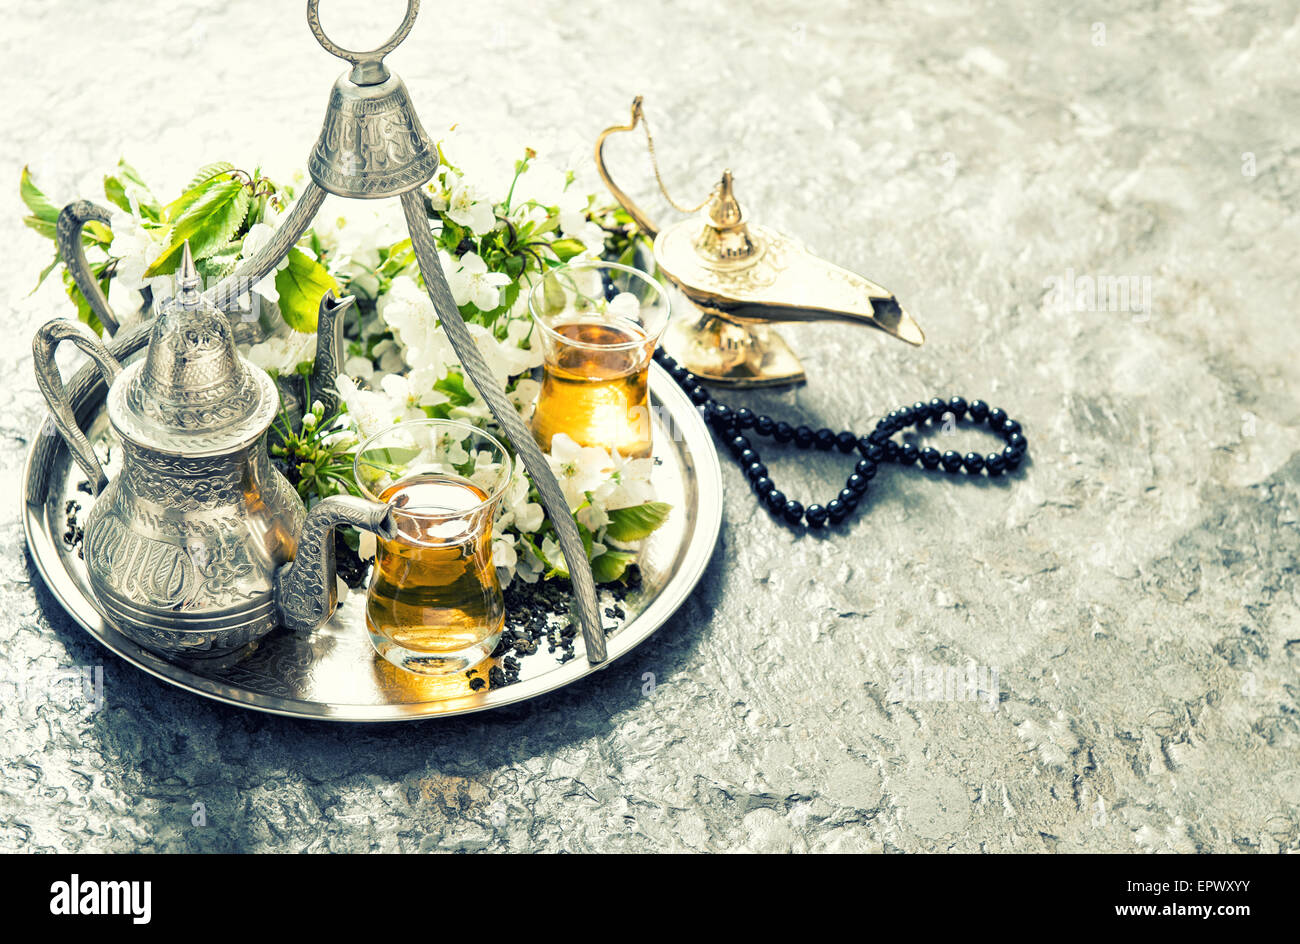 Orientalische Silber Tee Geschirr, Arabische Laterne und Rosenkranz. Islamische Feiertage Dekoration. Vintage-Stil getönten Bild Stockfoto